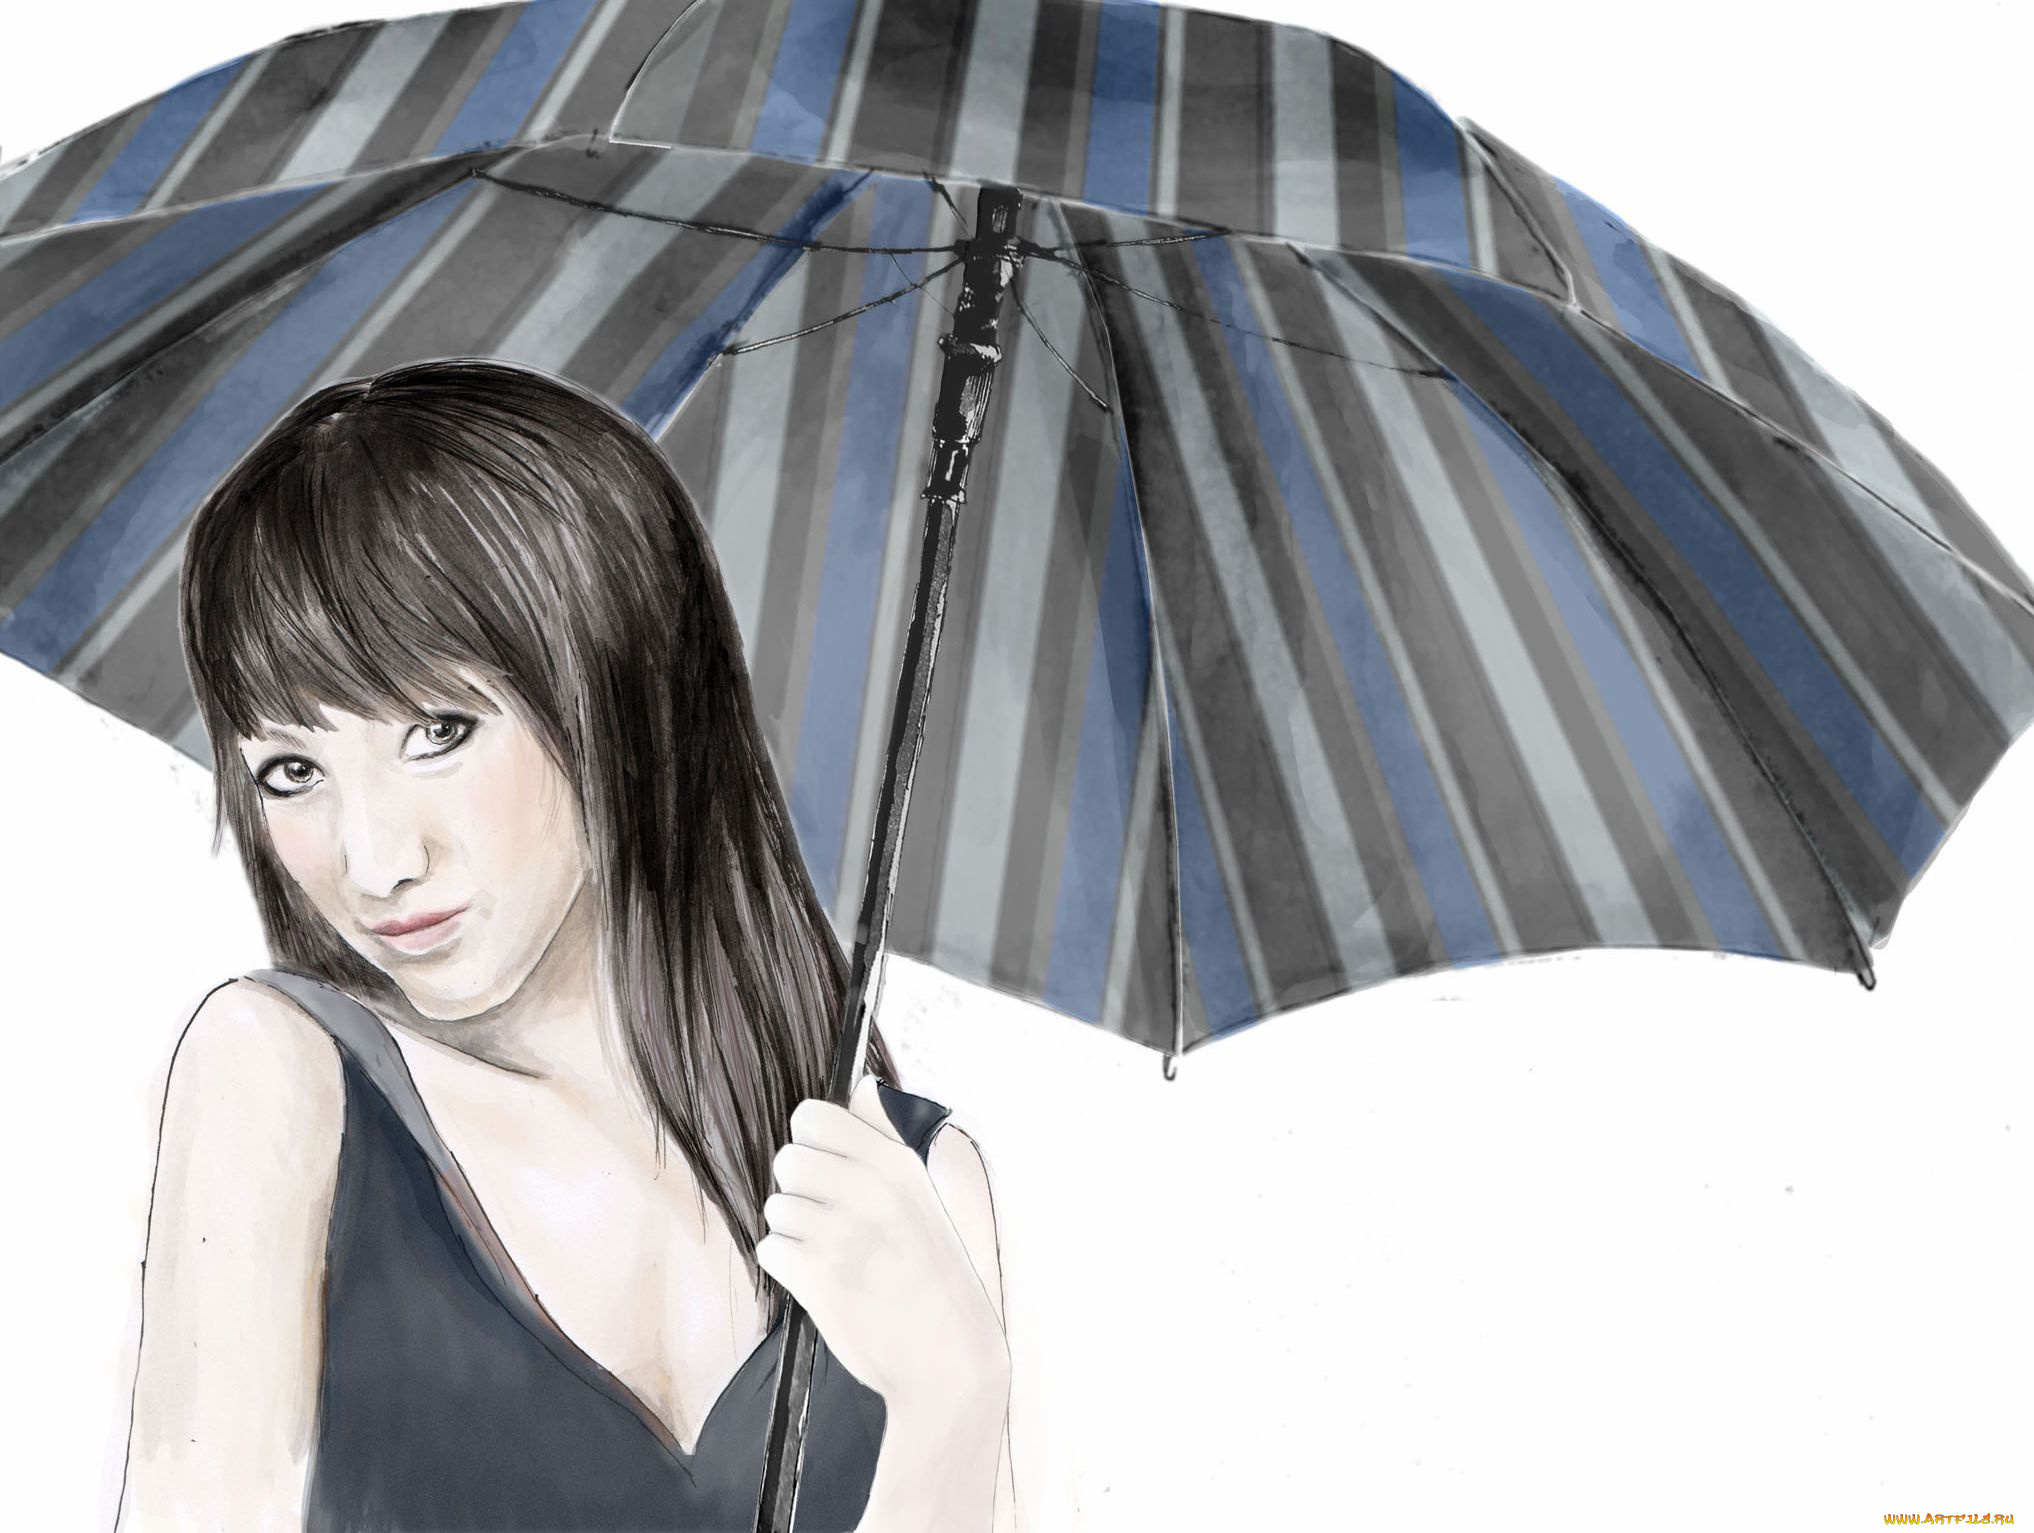 рисованные, люди, девушка, зонт